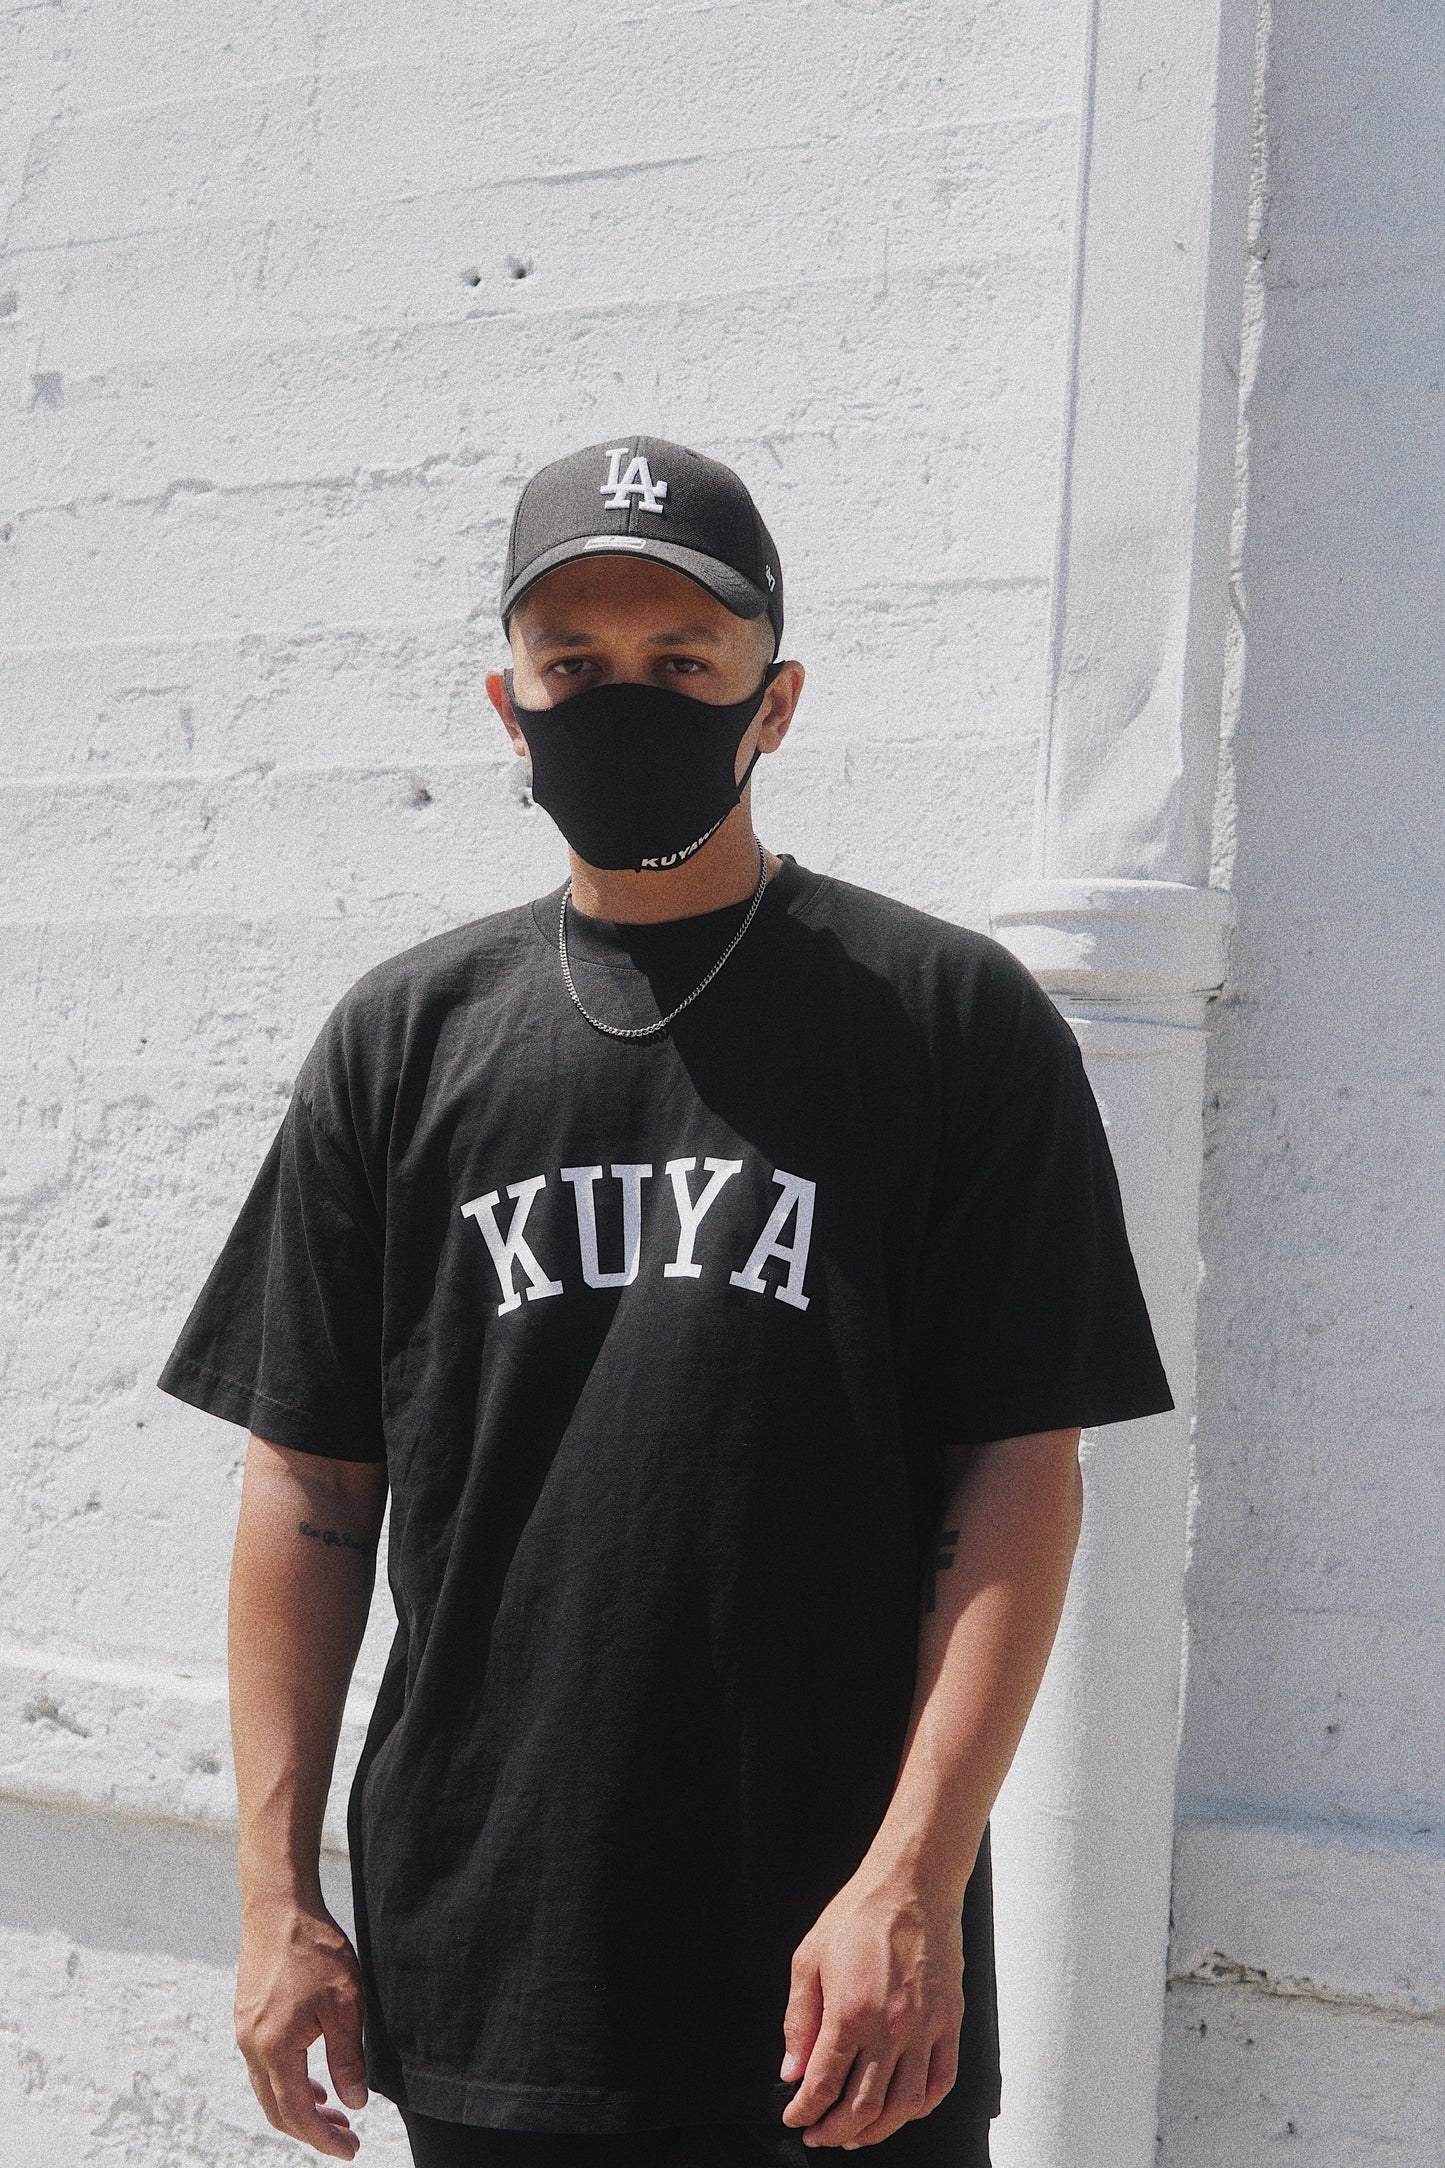 Kuya T-Shirt (Black)